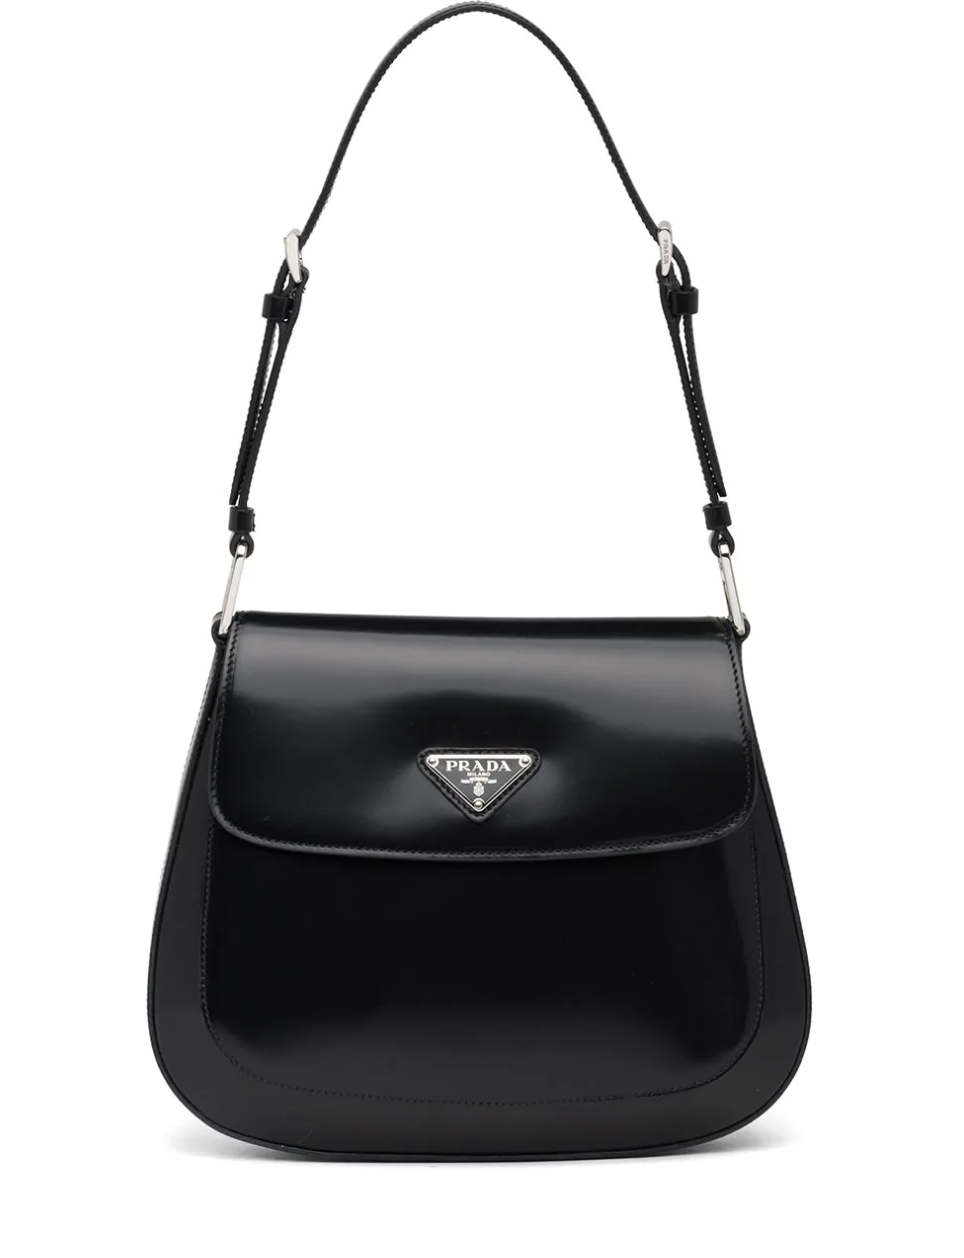 Luxurys Designers Women handbags … curated on LTK